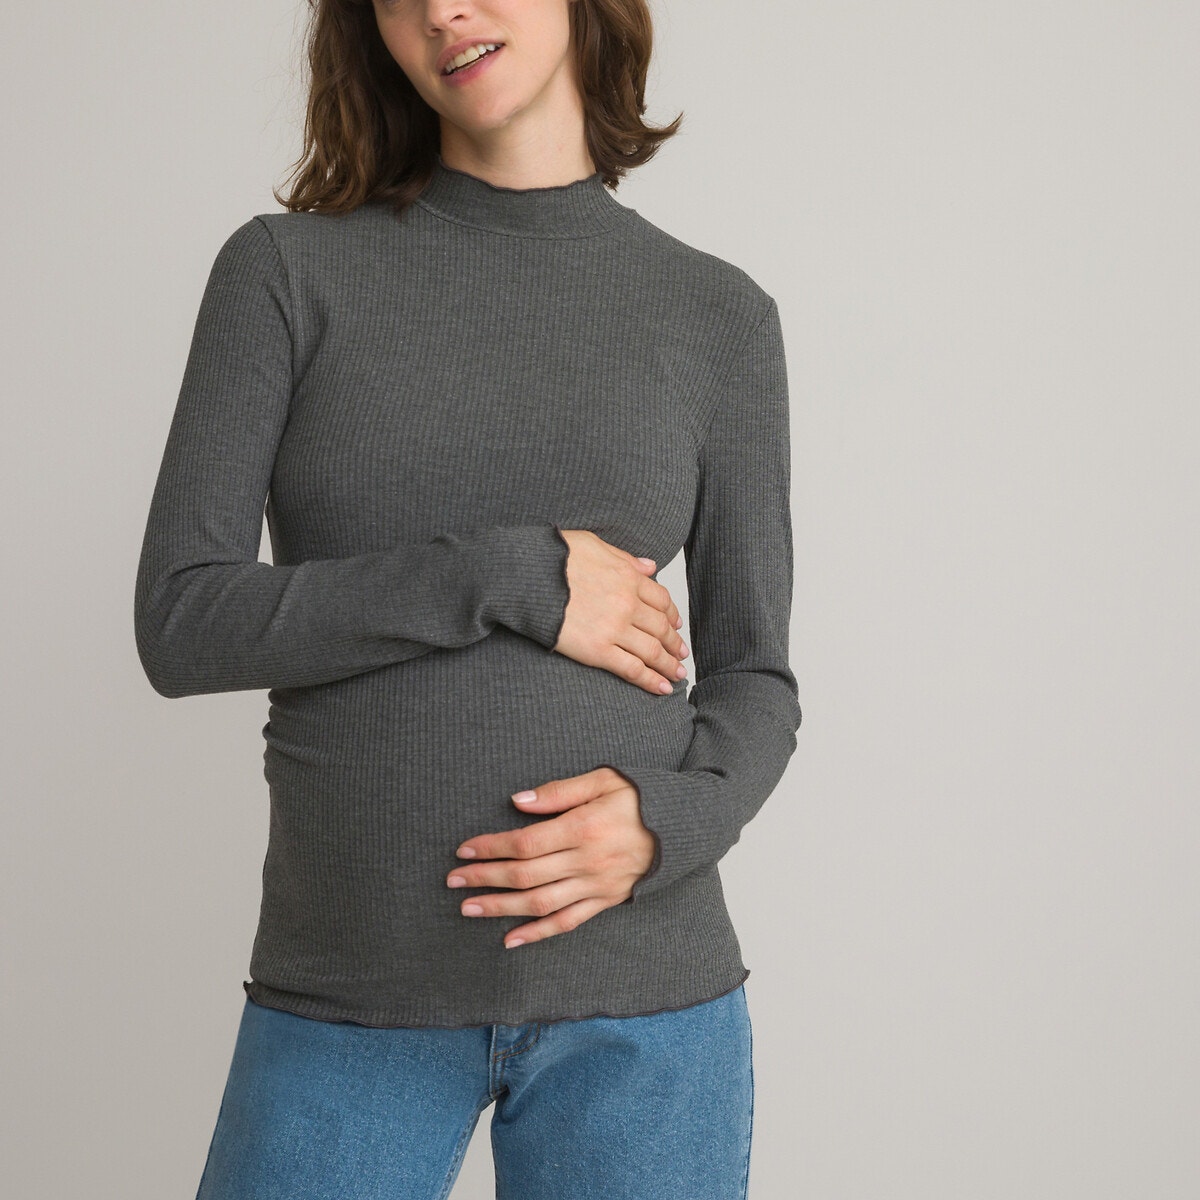 Μακρυμάνικη μπλούζα εγκυμοσύνης με όρθιο λαιμό 350270967_10575